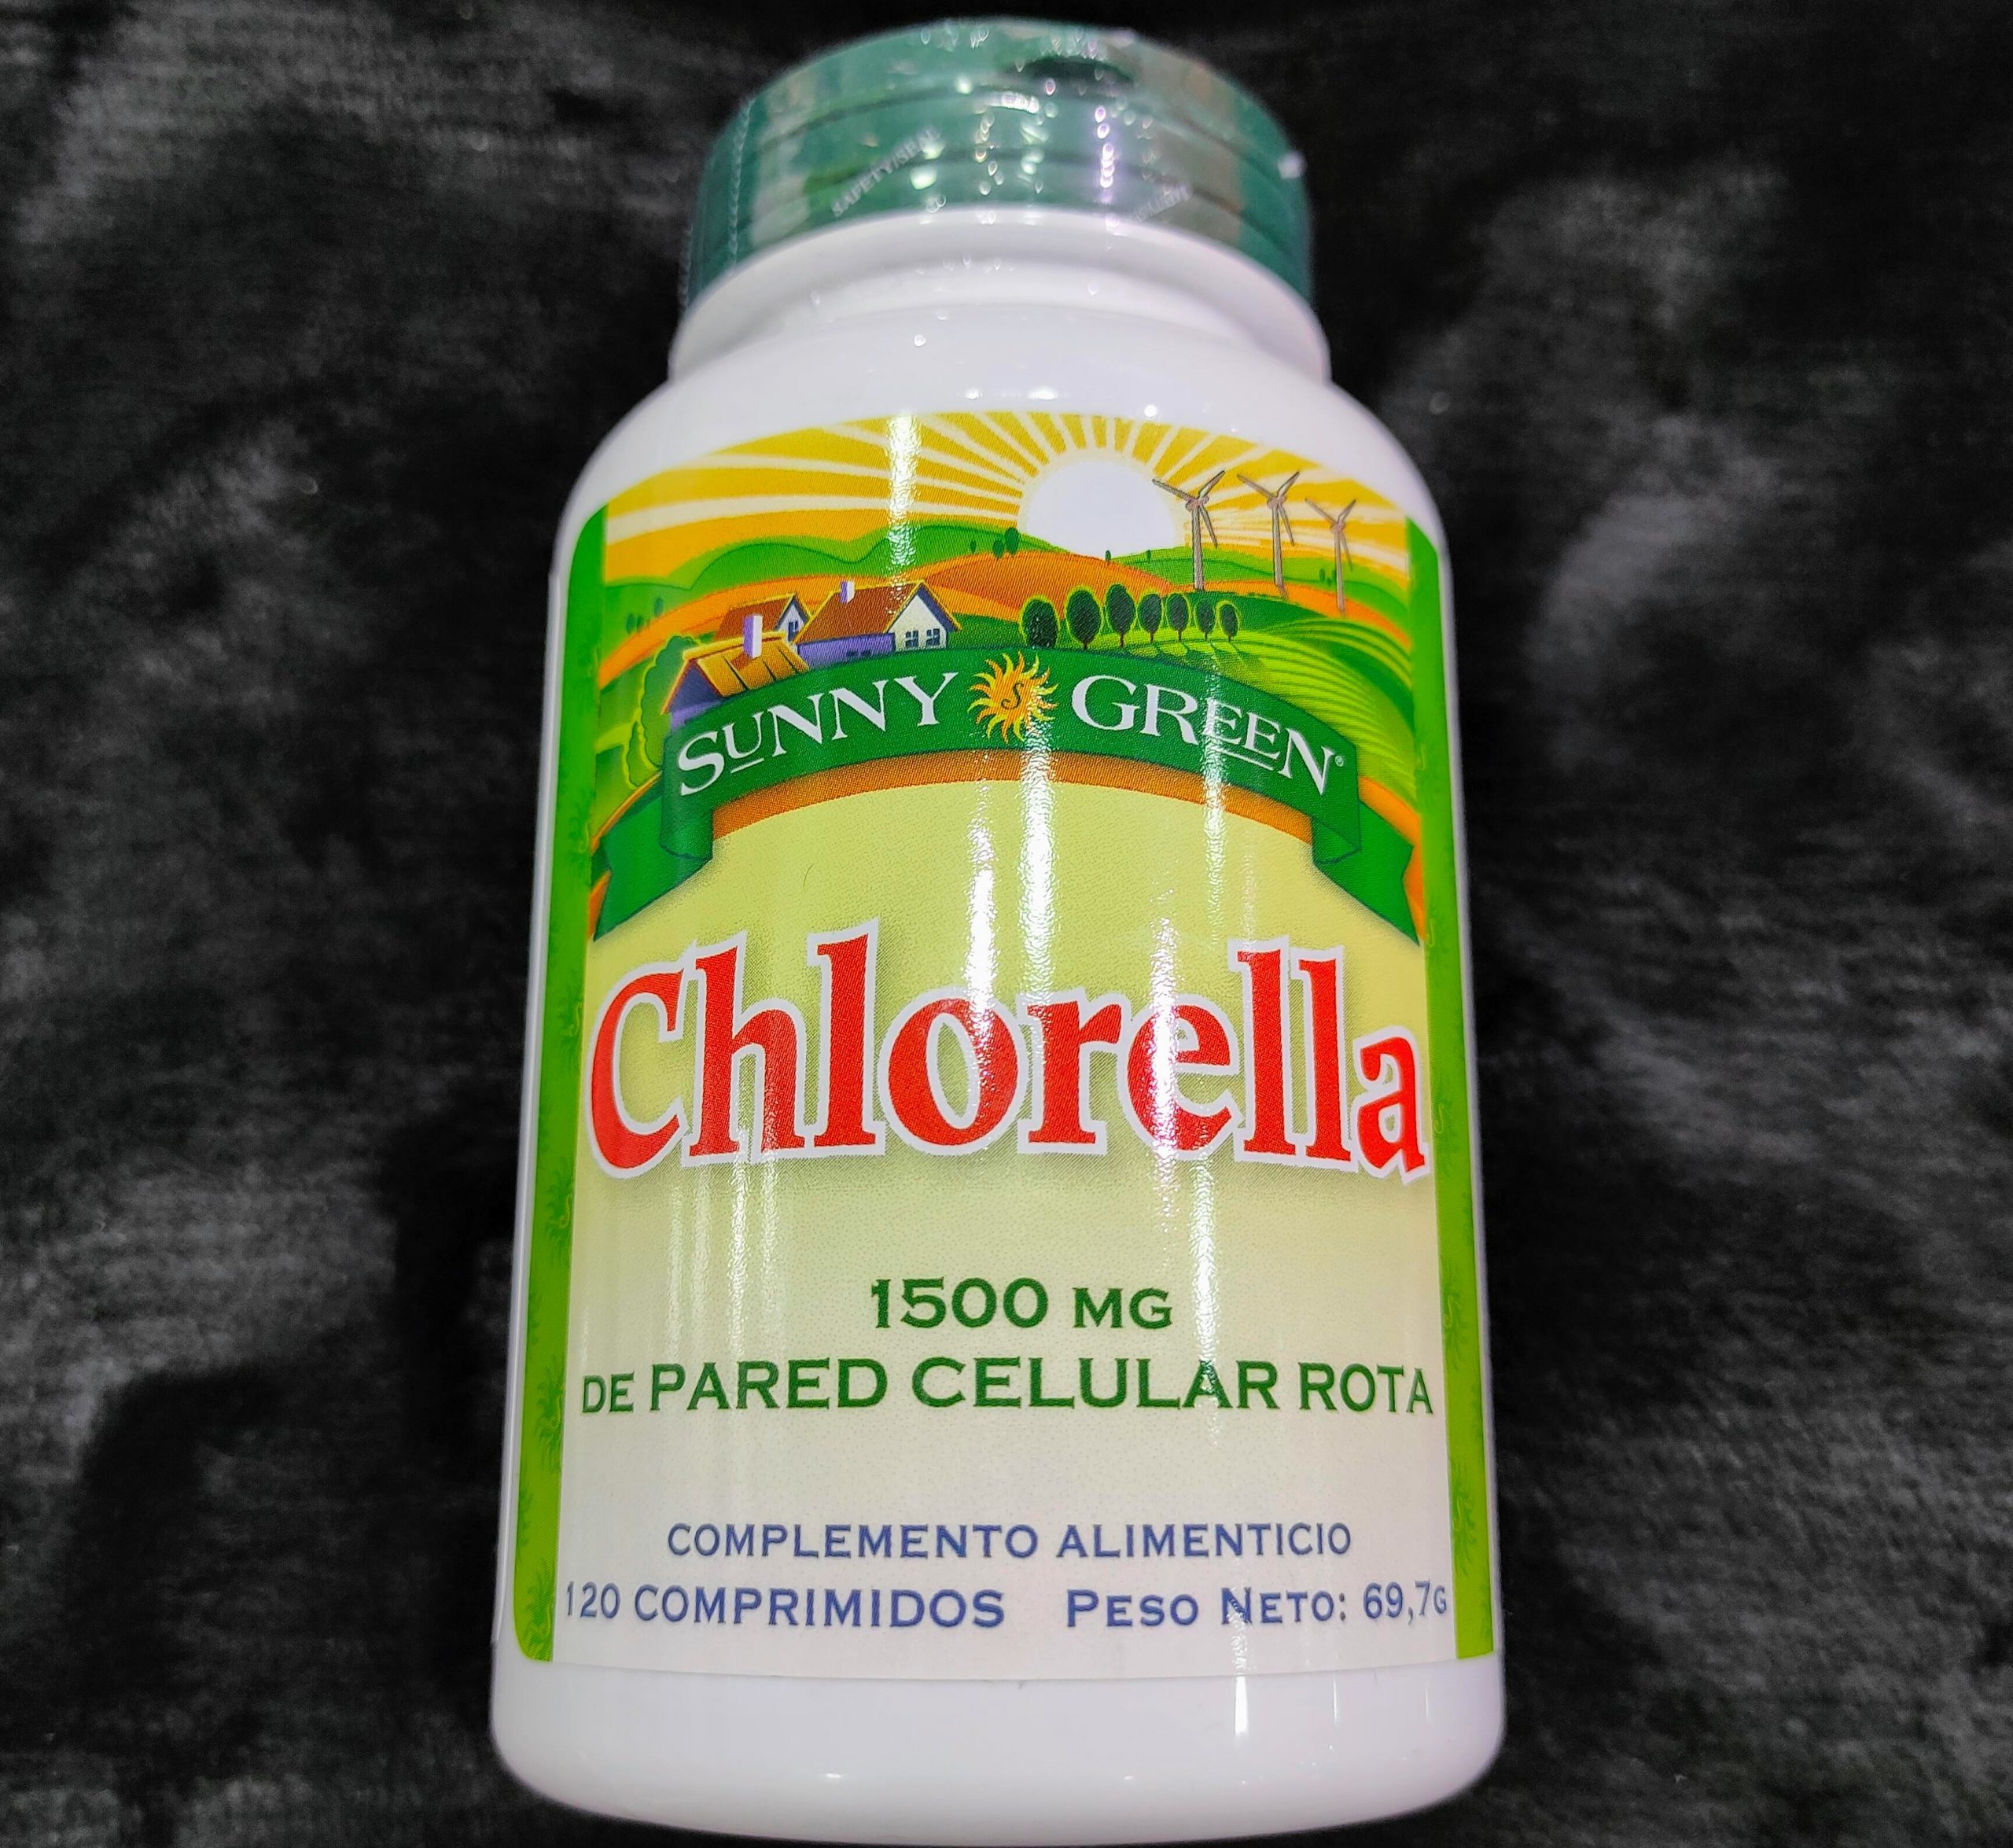 El alga Chlorella es un alga de agua dulce es una fuente altamente concentrada de vitaminas minerales y proteínas